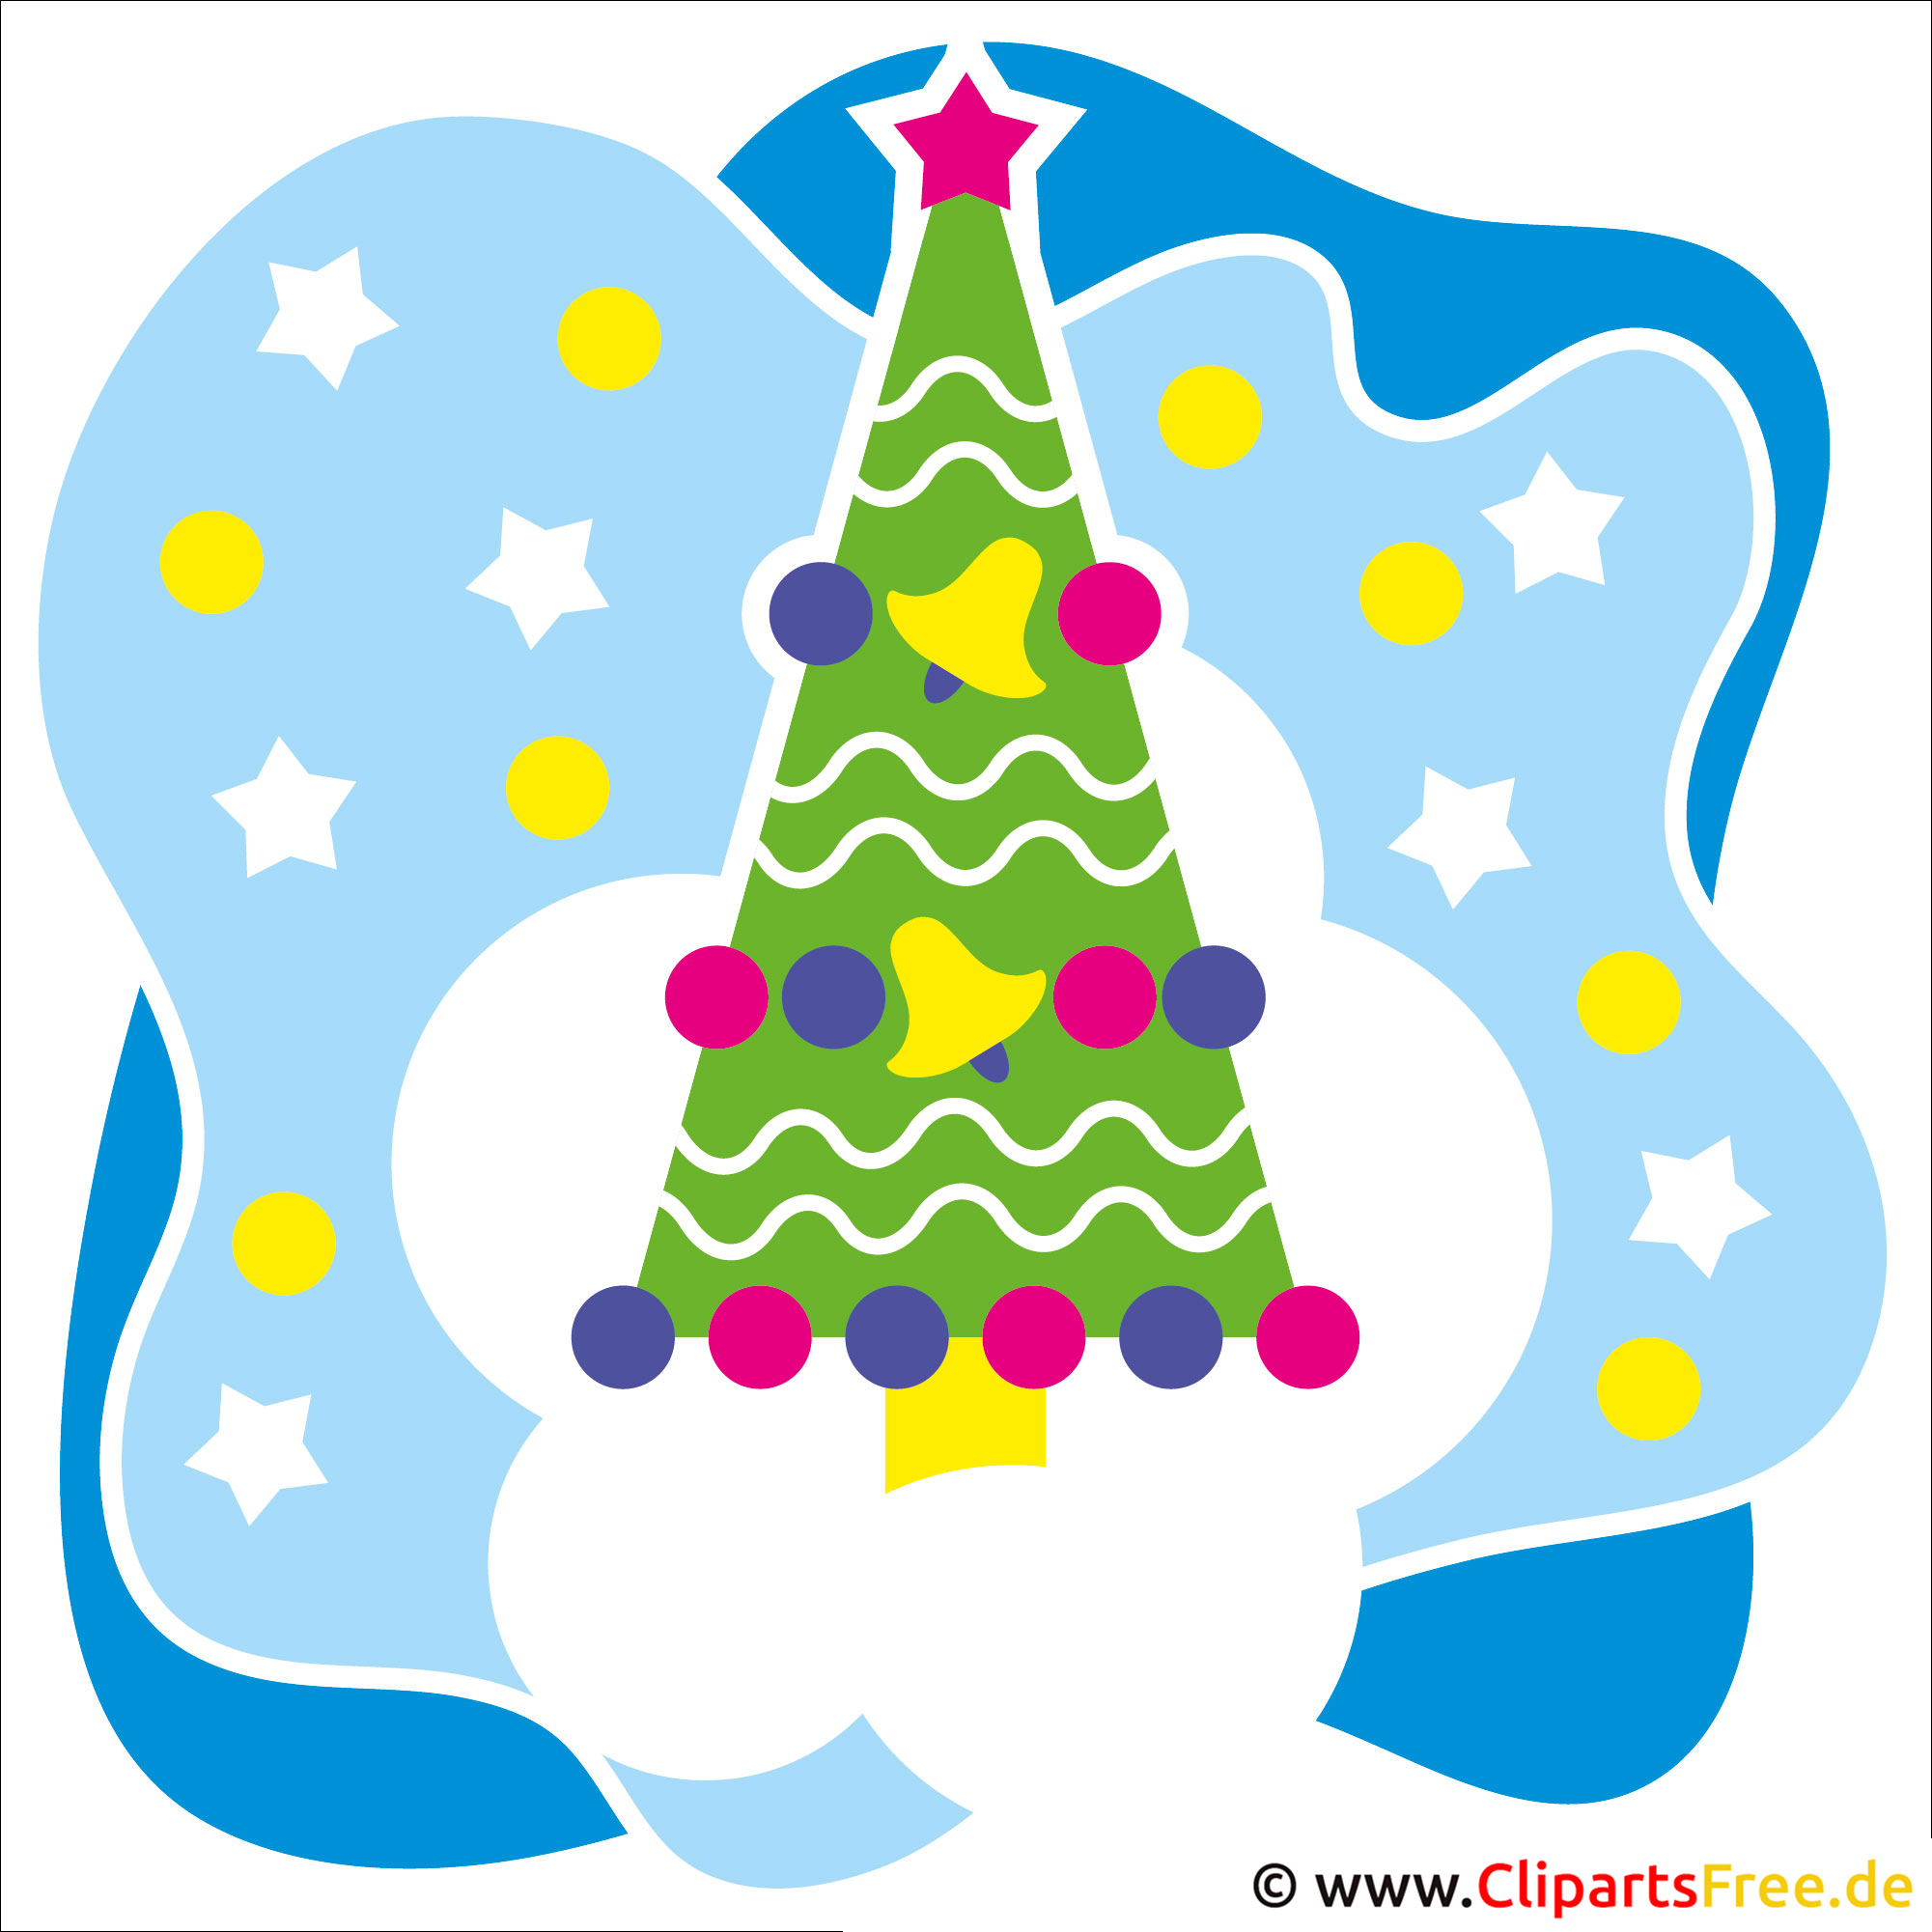 clipart weihnachten gratis download - photo #28